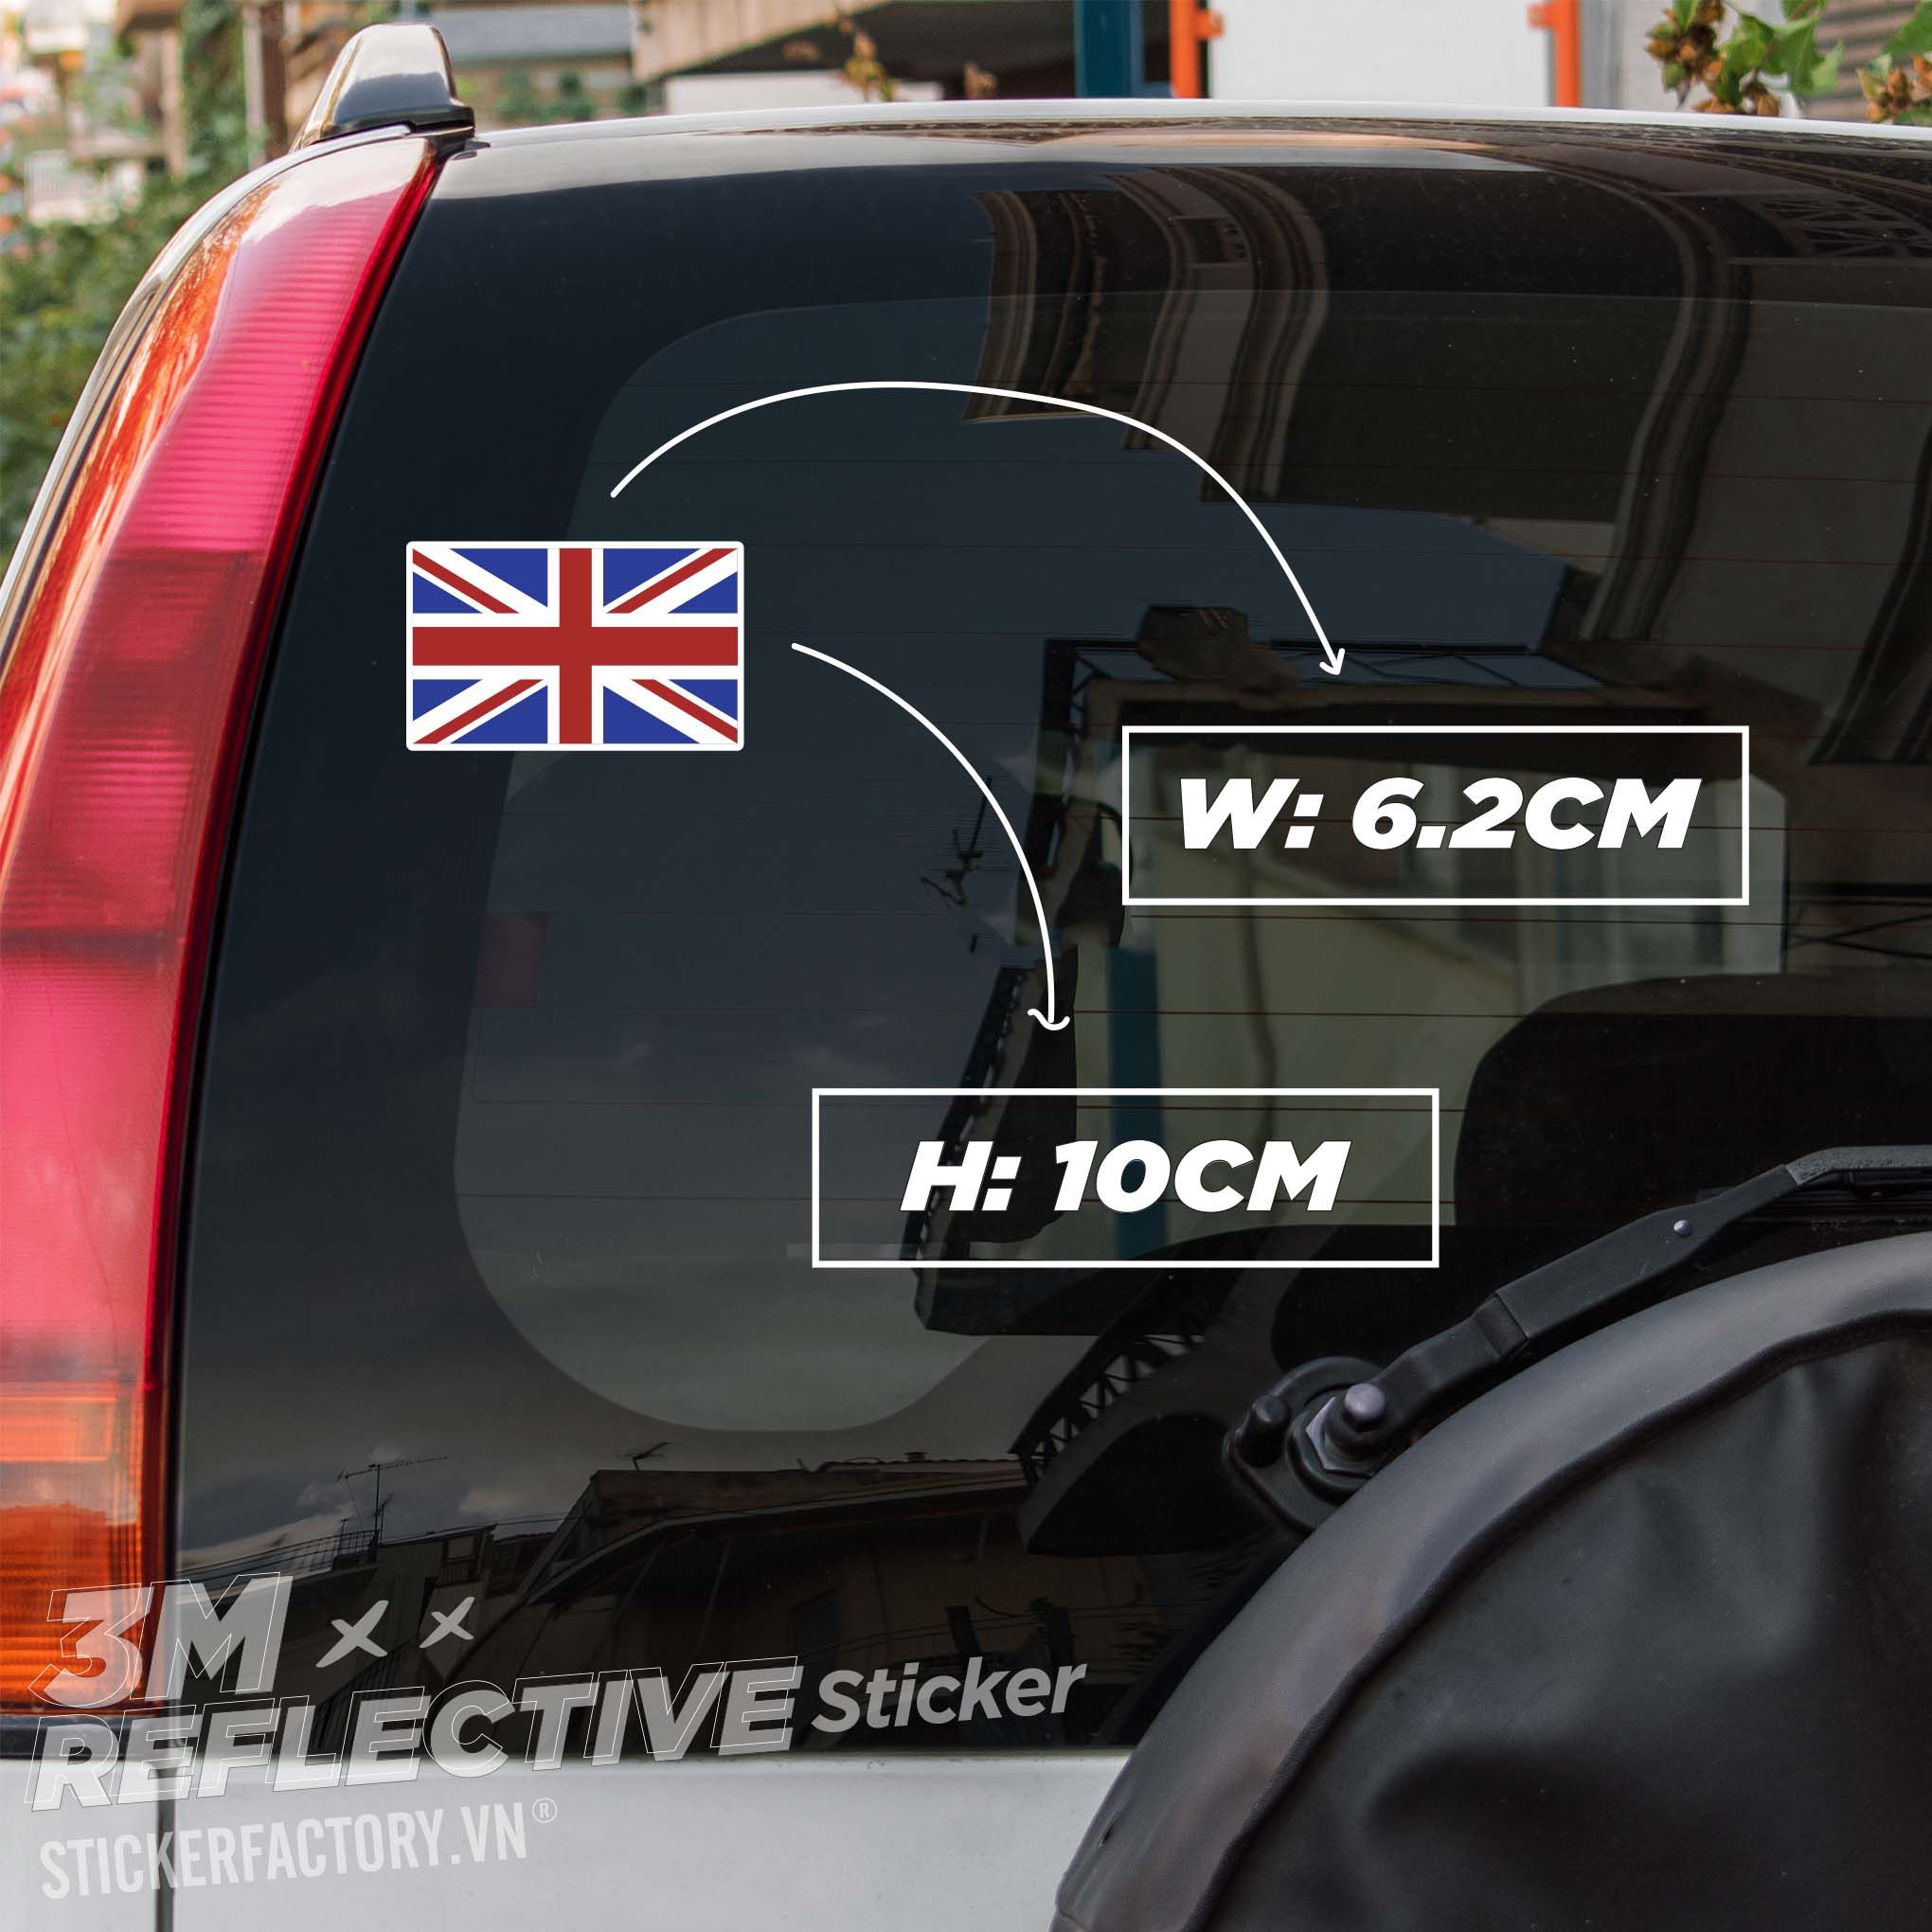 ENGLAND FLAG 3M - Reflective Sticker Die-cut